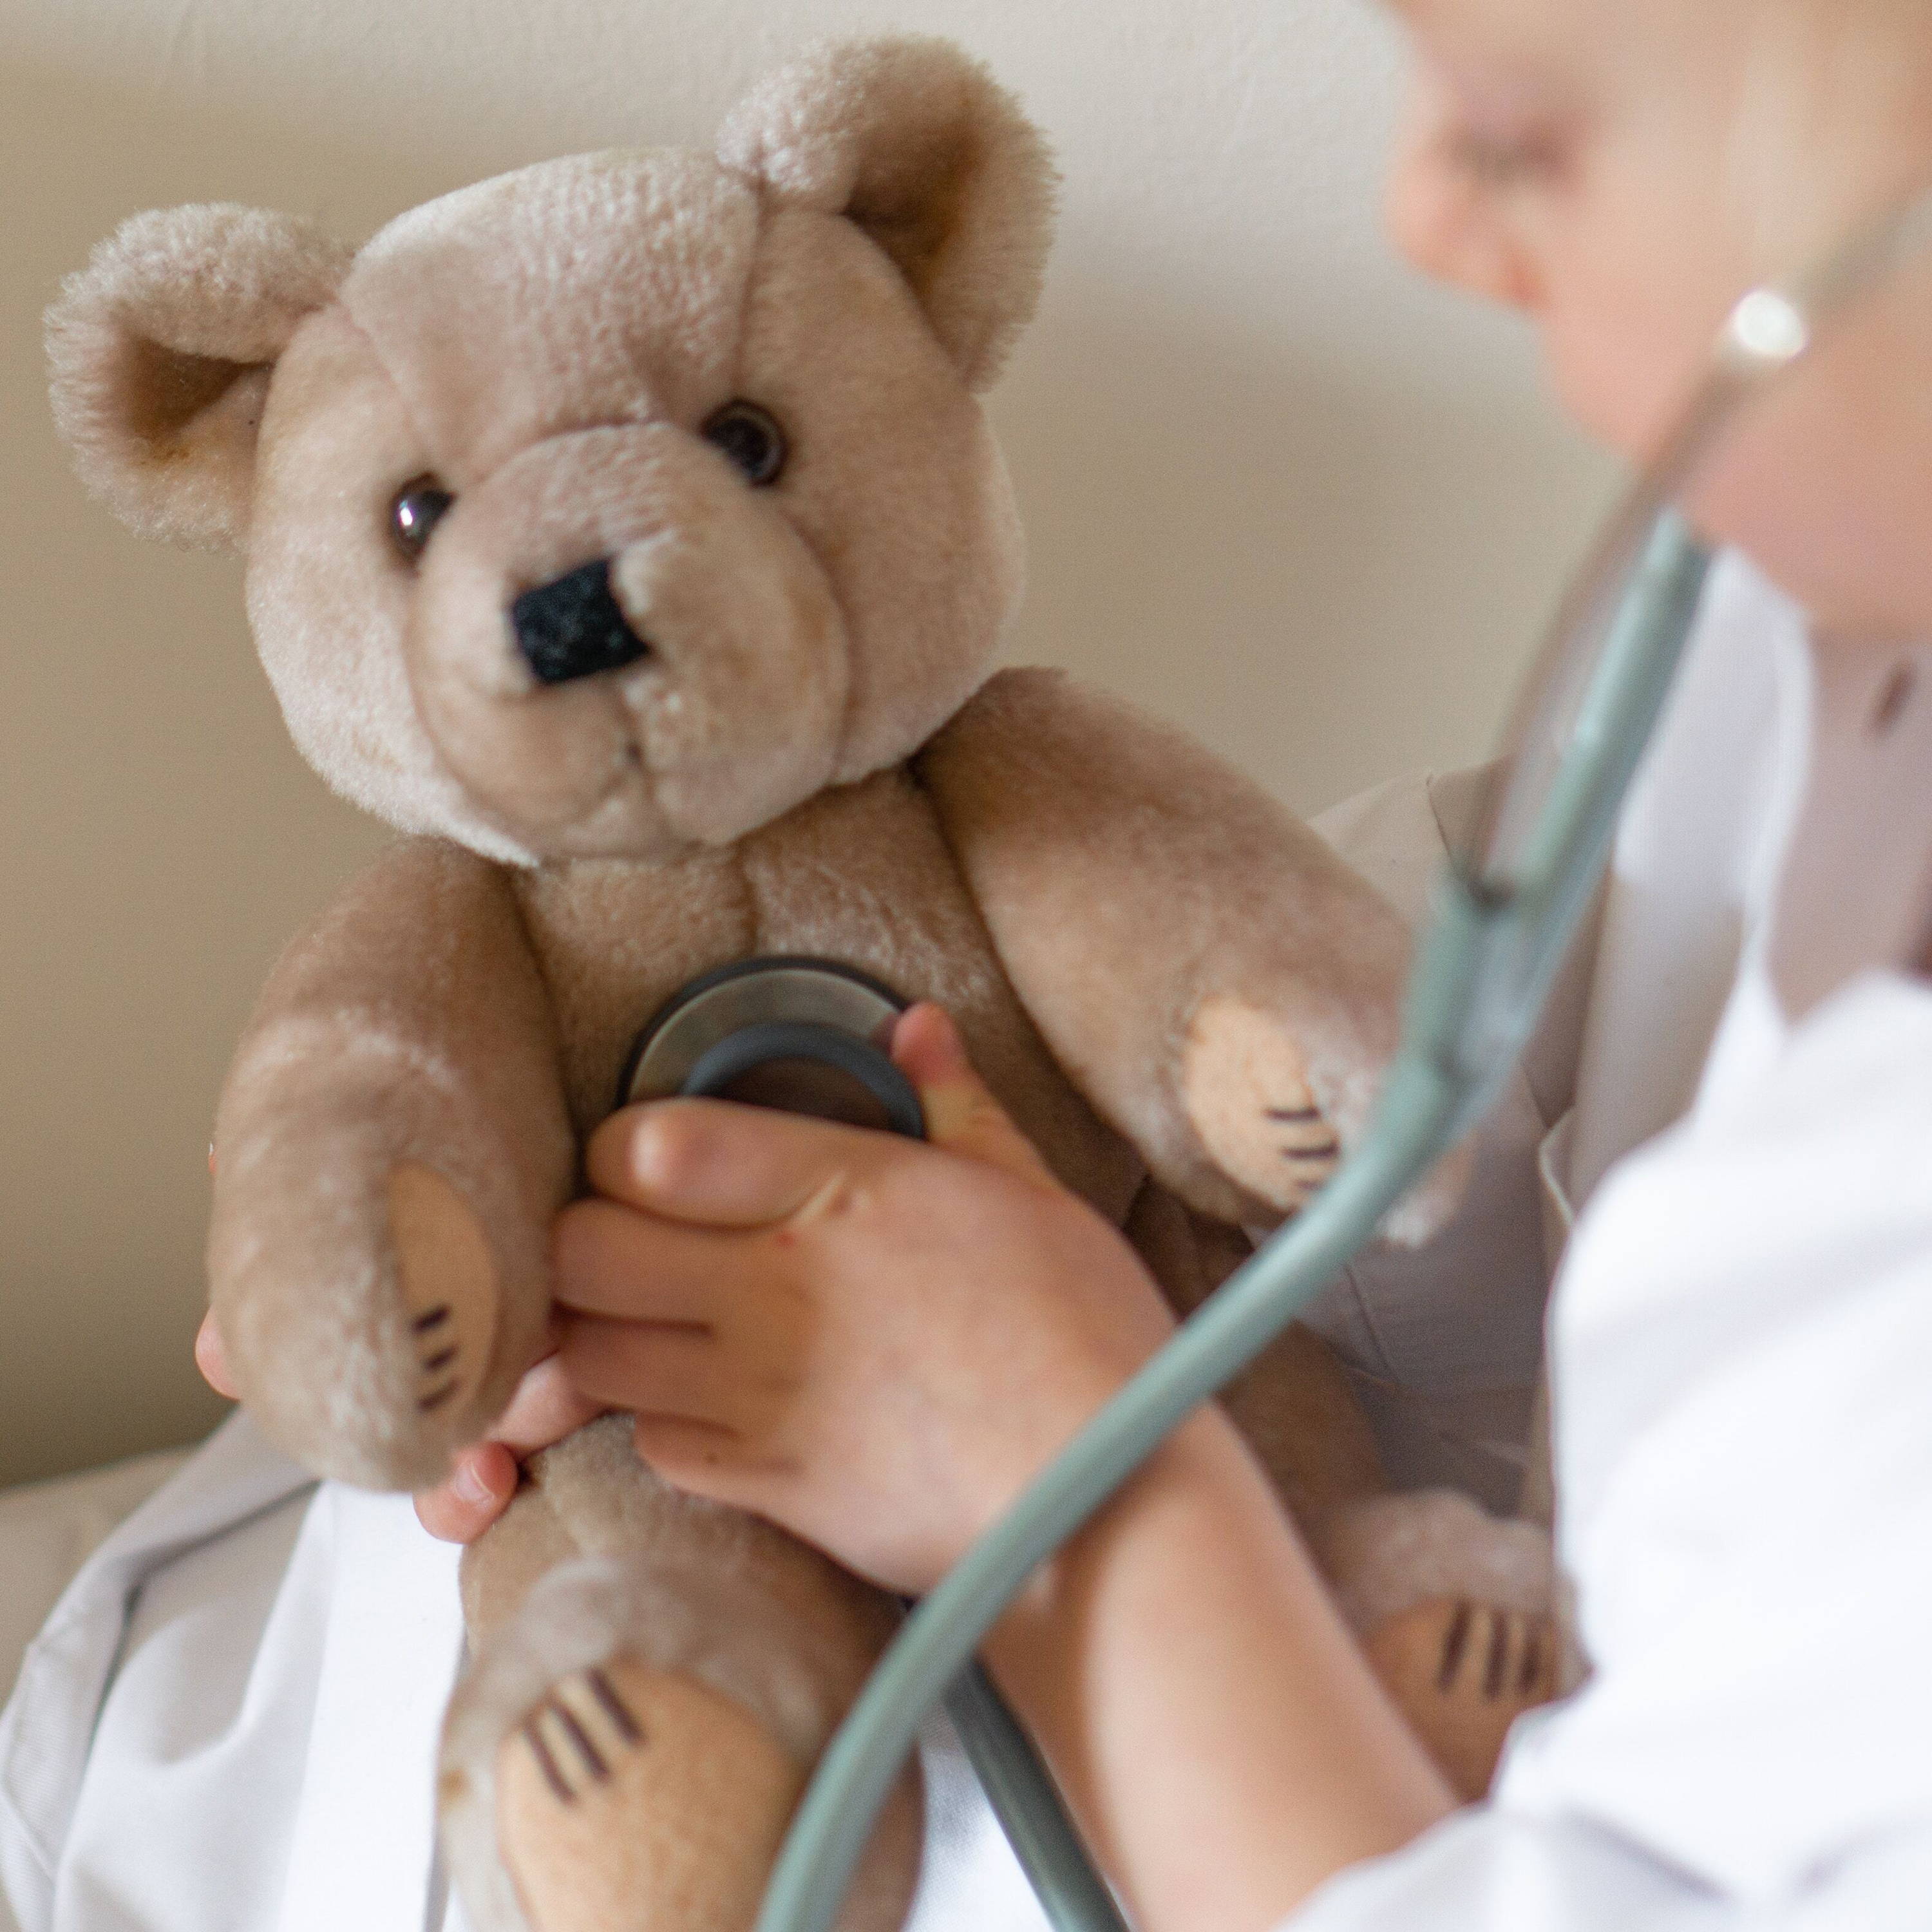 Enfant portant un manteau blanc jouant au médecin - il utilise un stéthoscope pour examiner son ourson en peluche